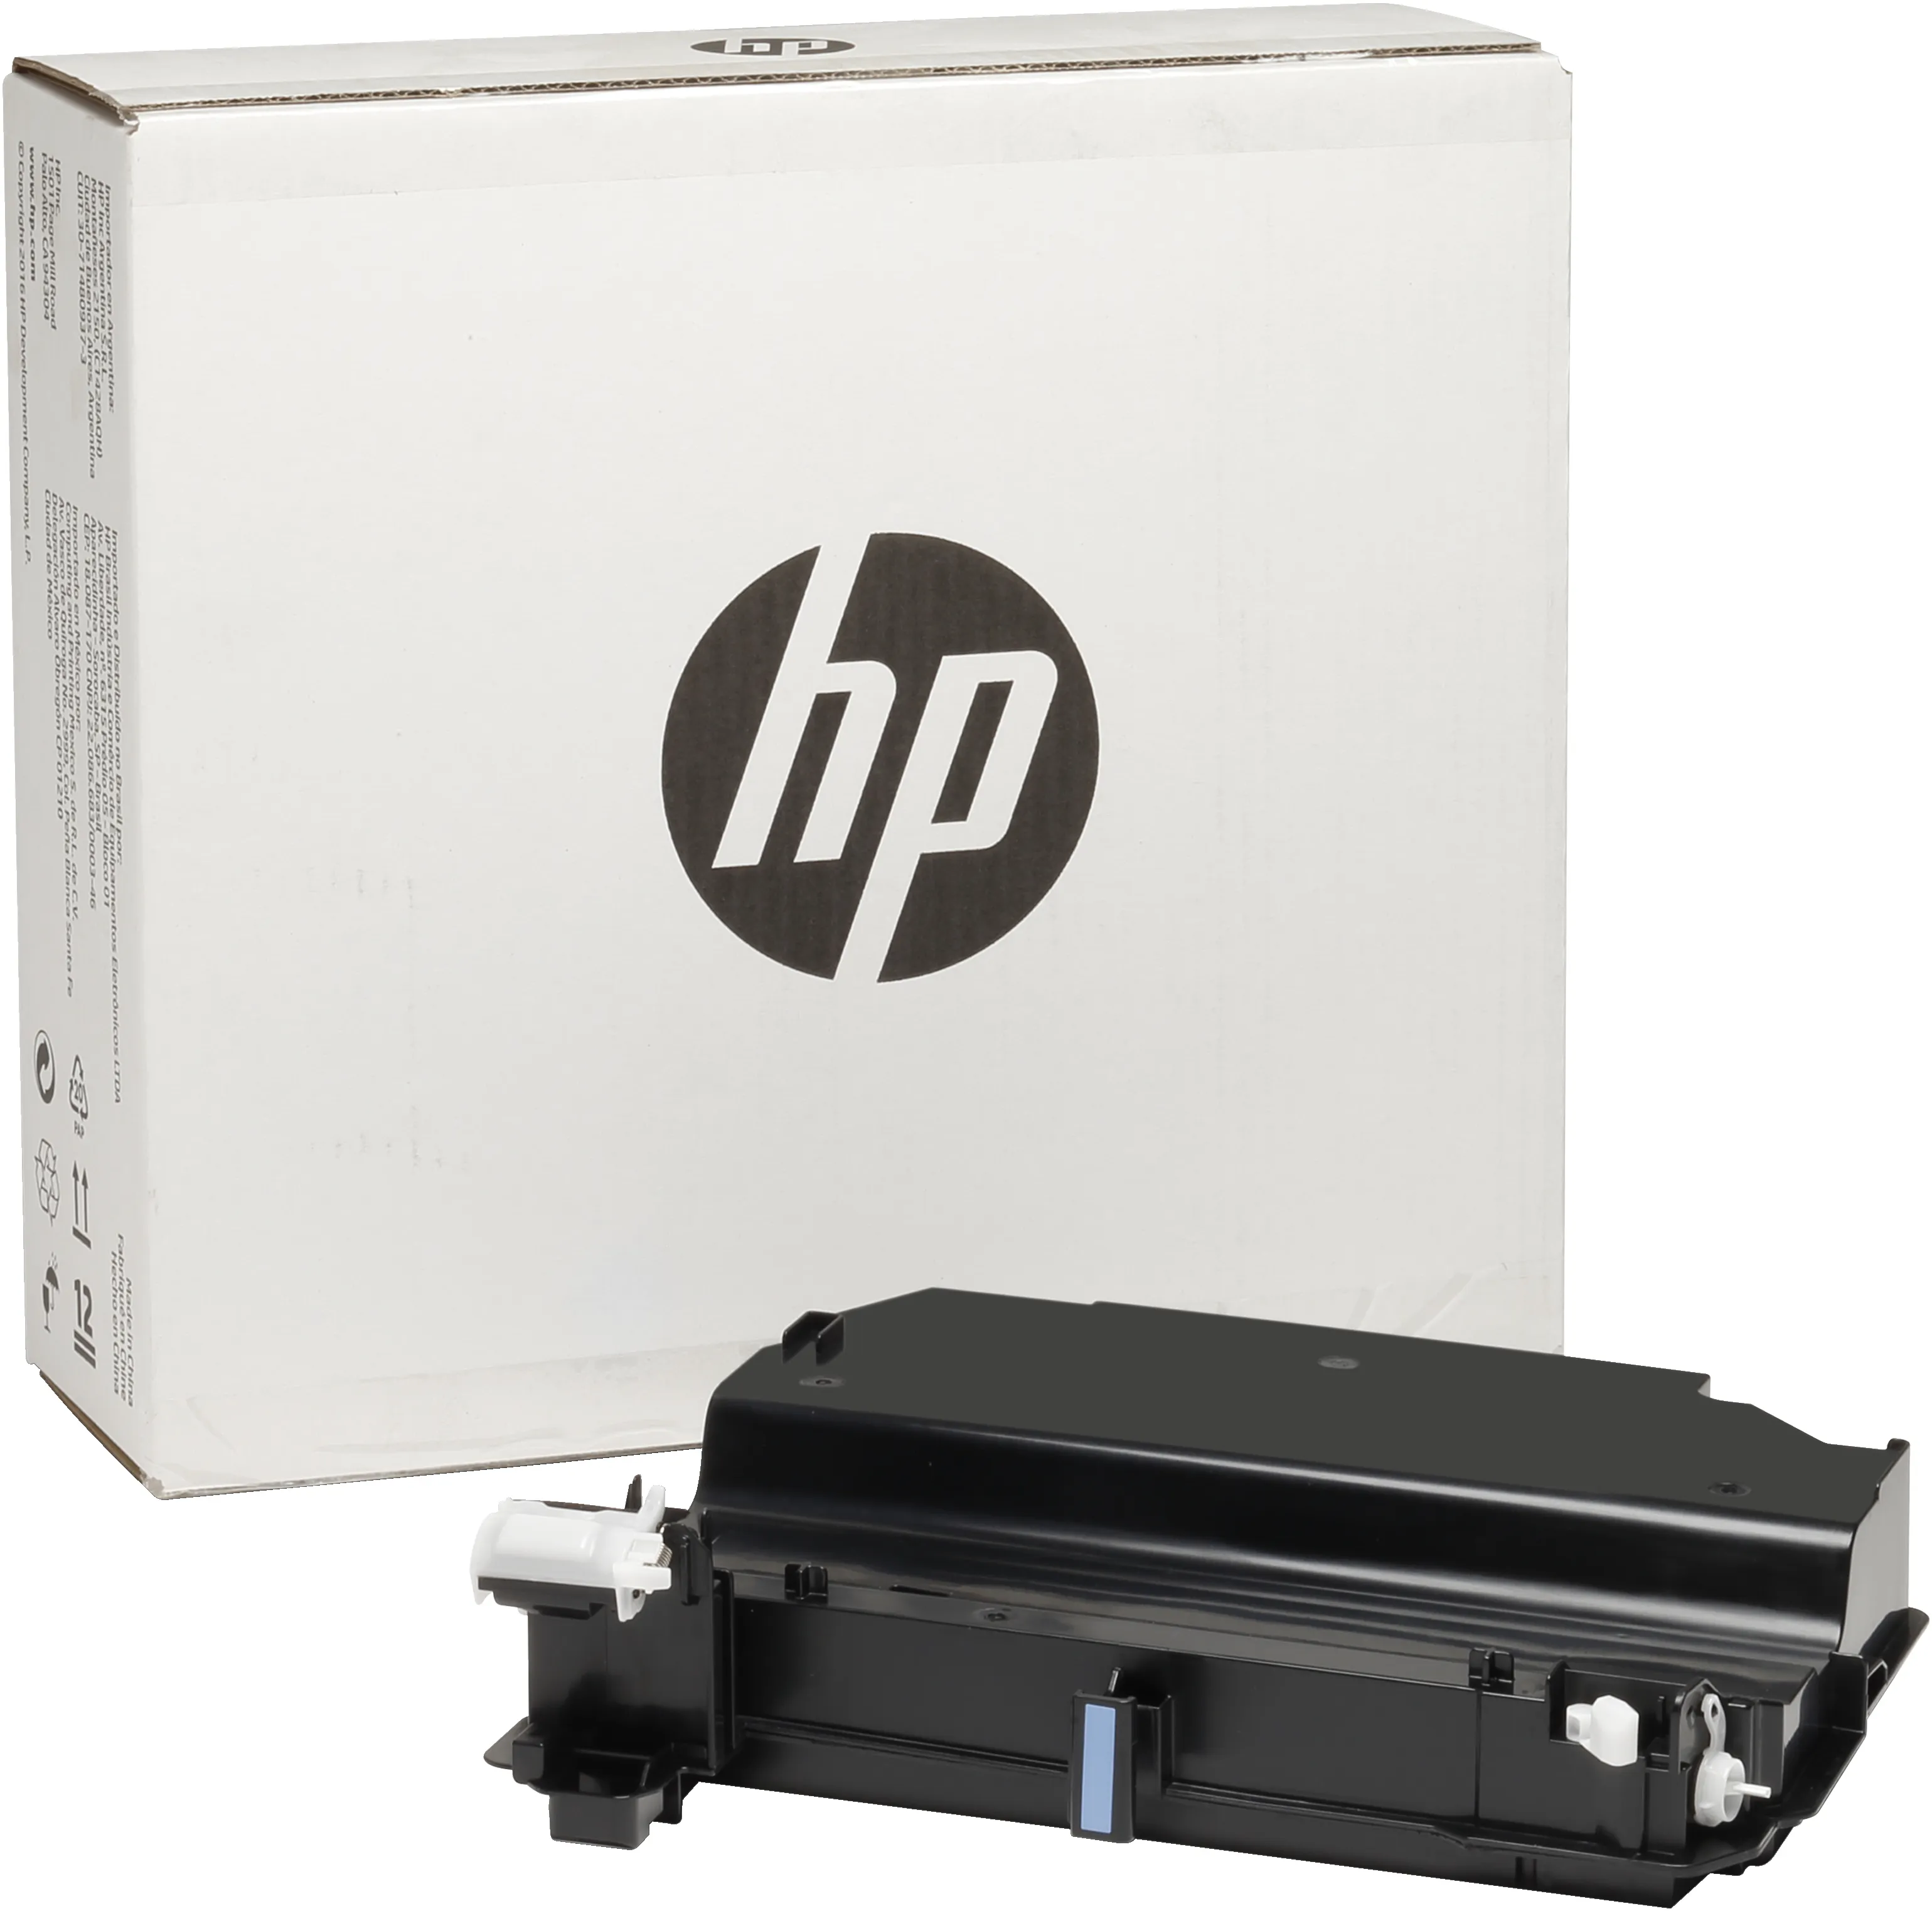 Vente Unité de collecte de toner HP LaserJet HP au meilleur prix - visuel 2